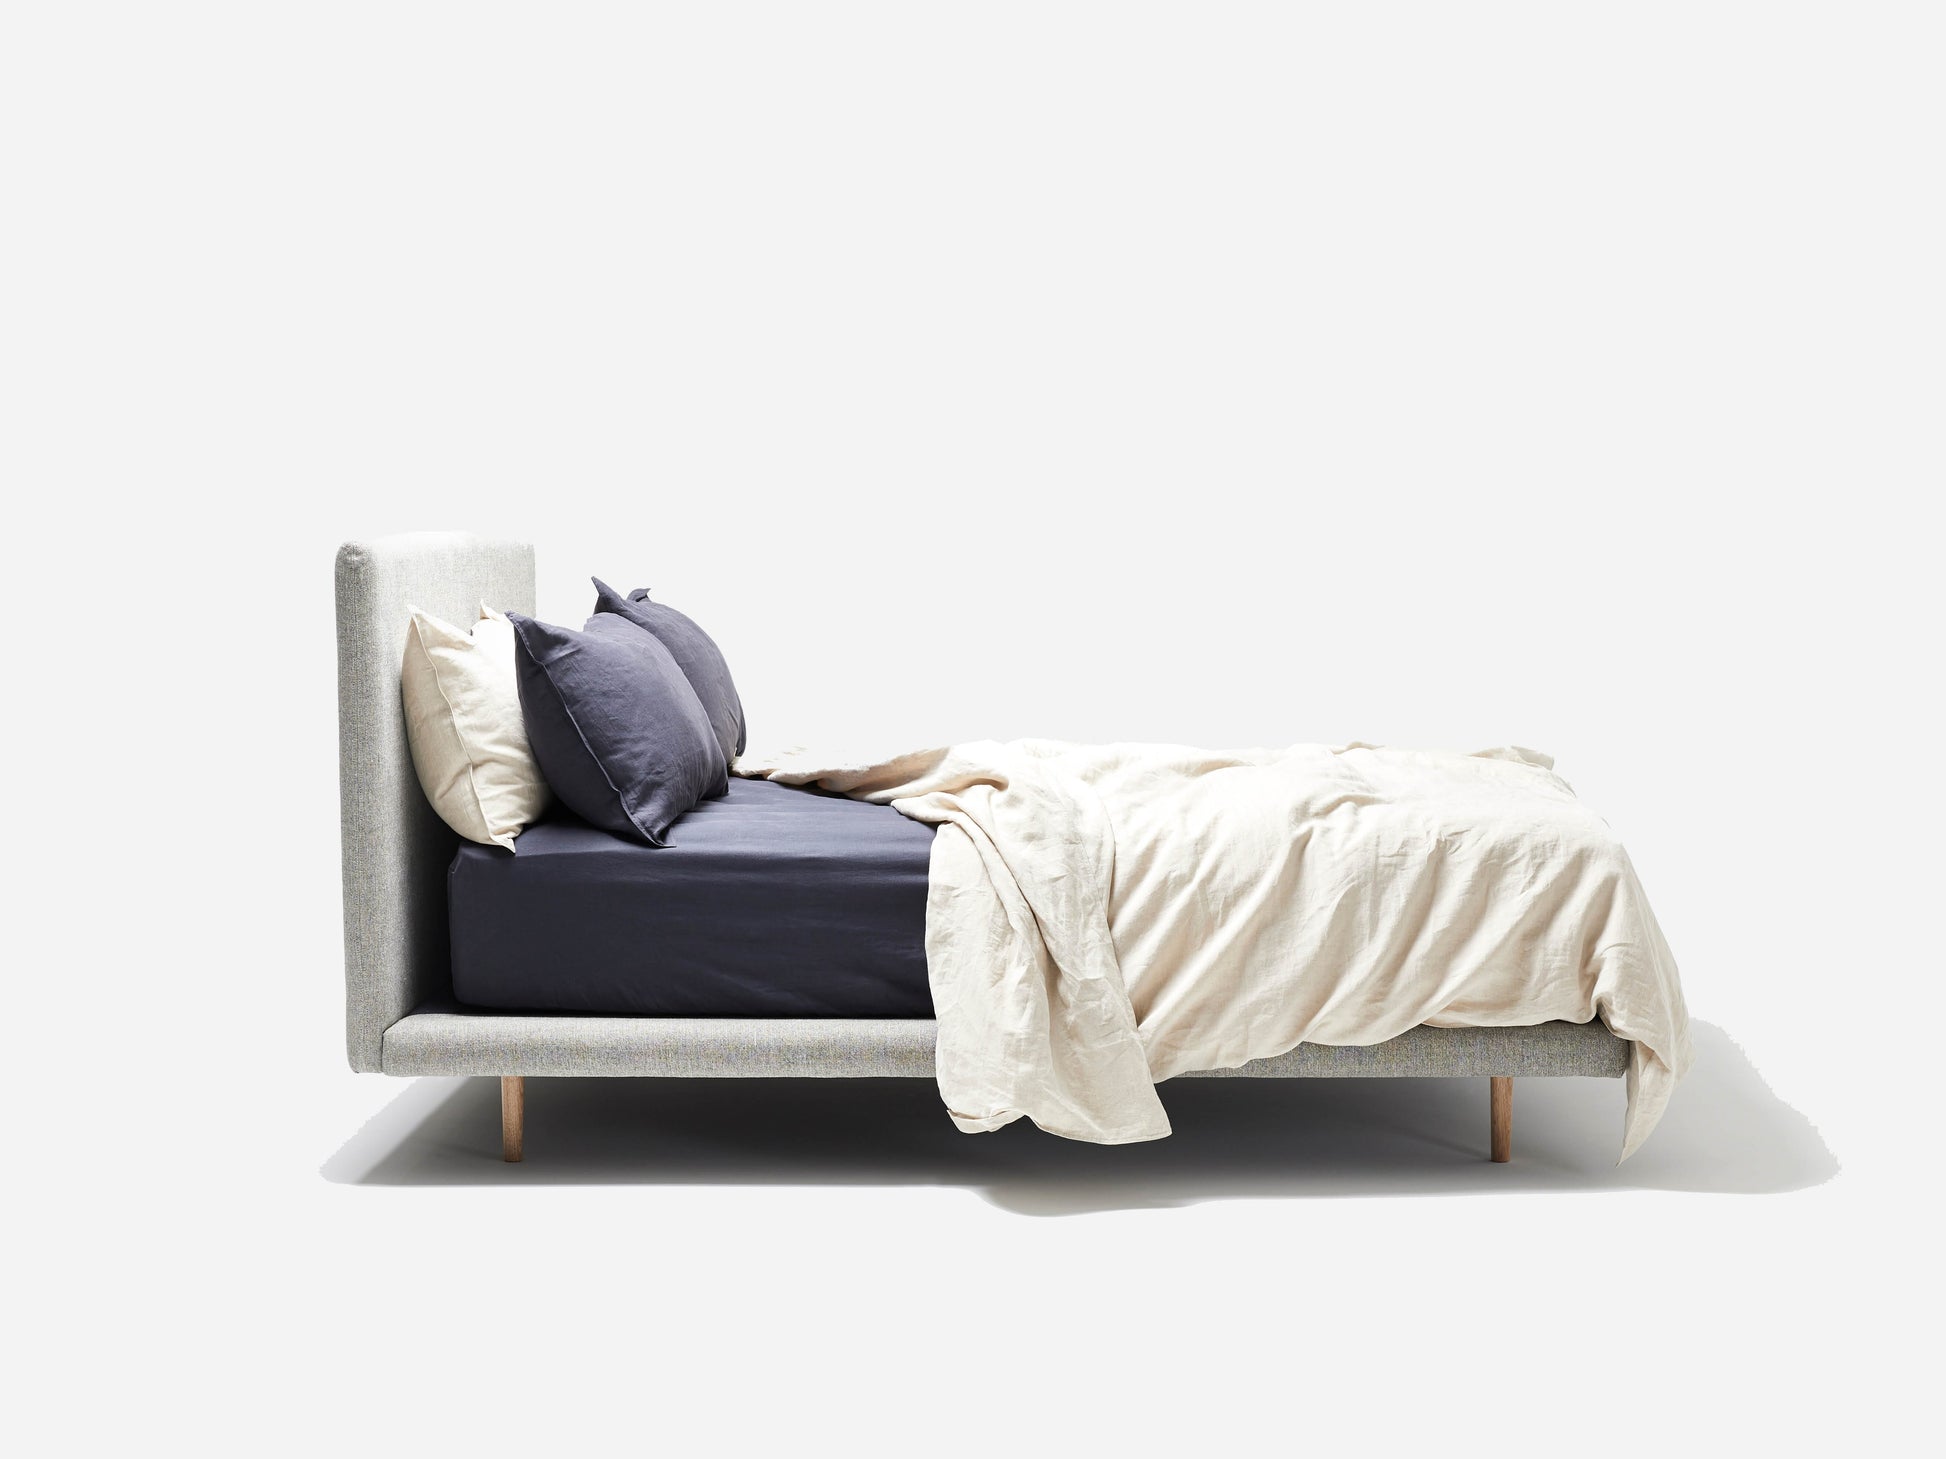 Avoca Bed 15% Off Indoor Furniture Kett 